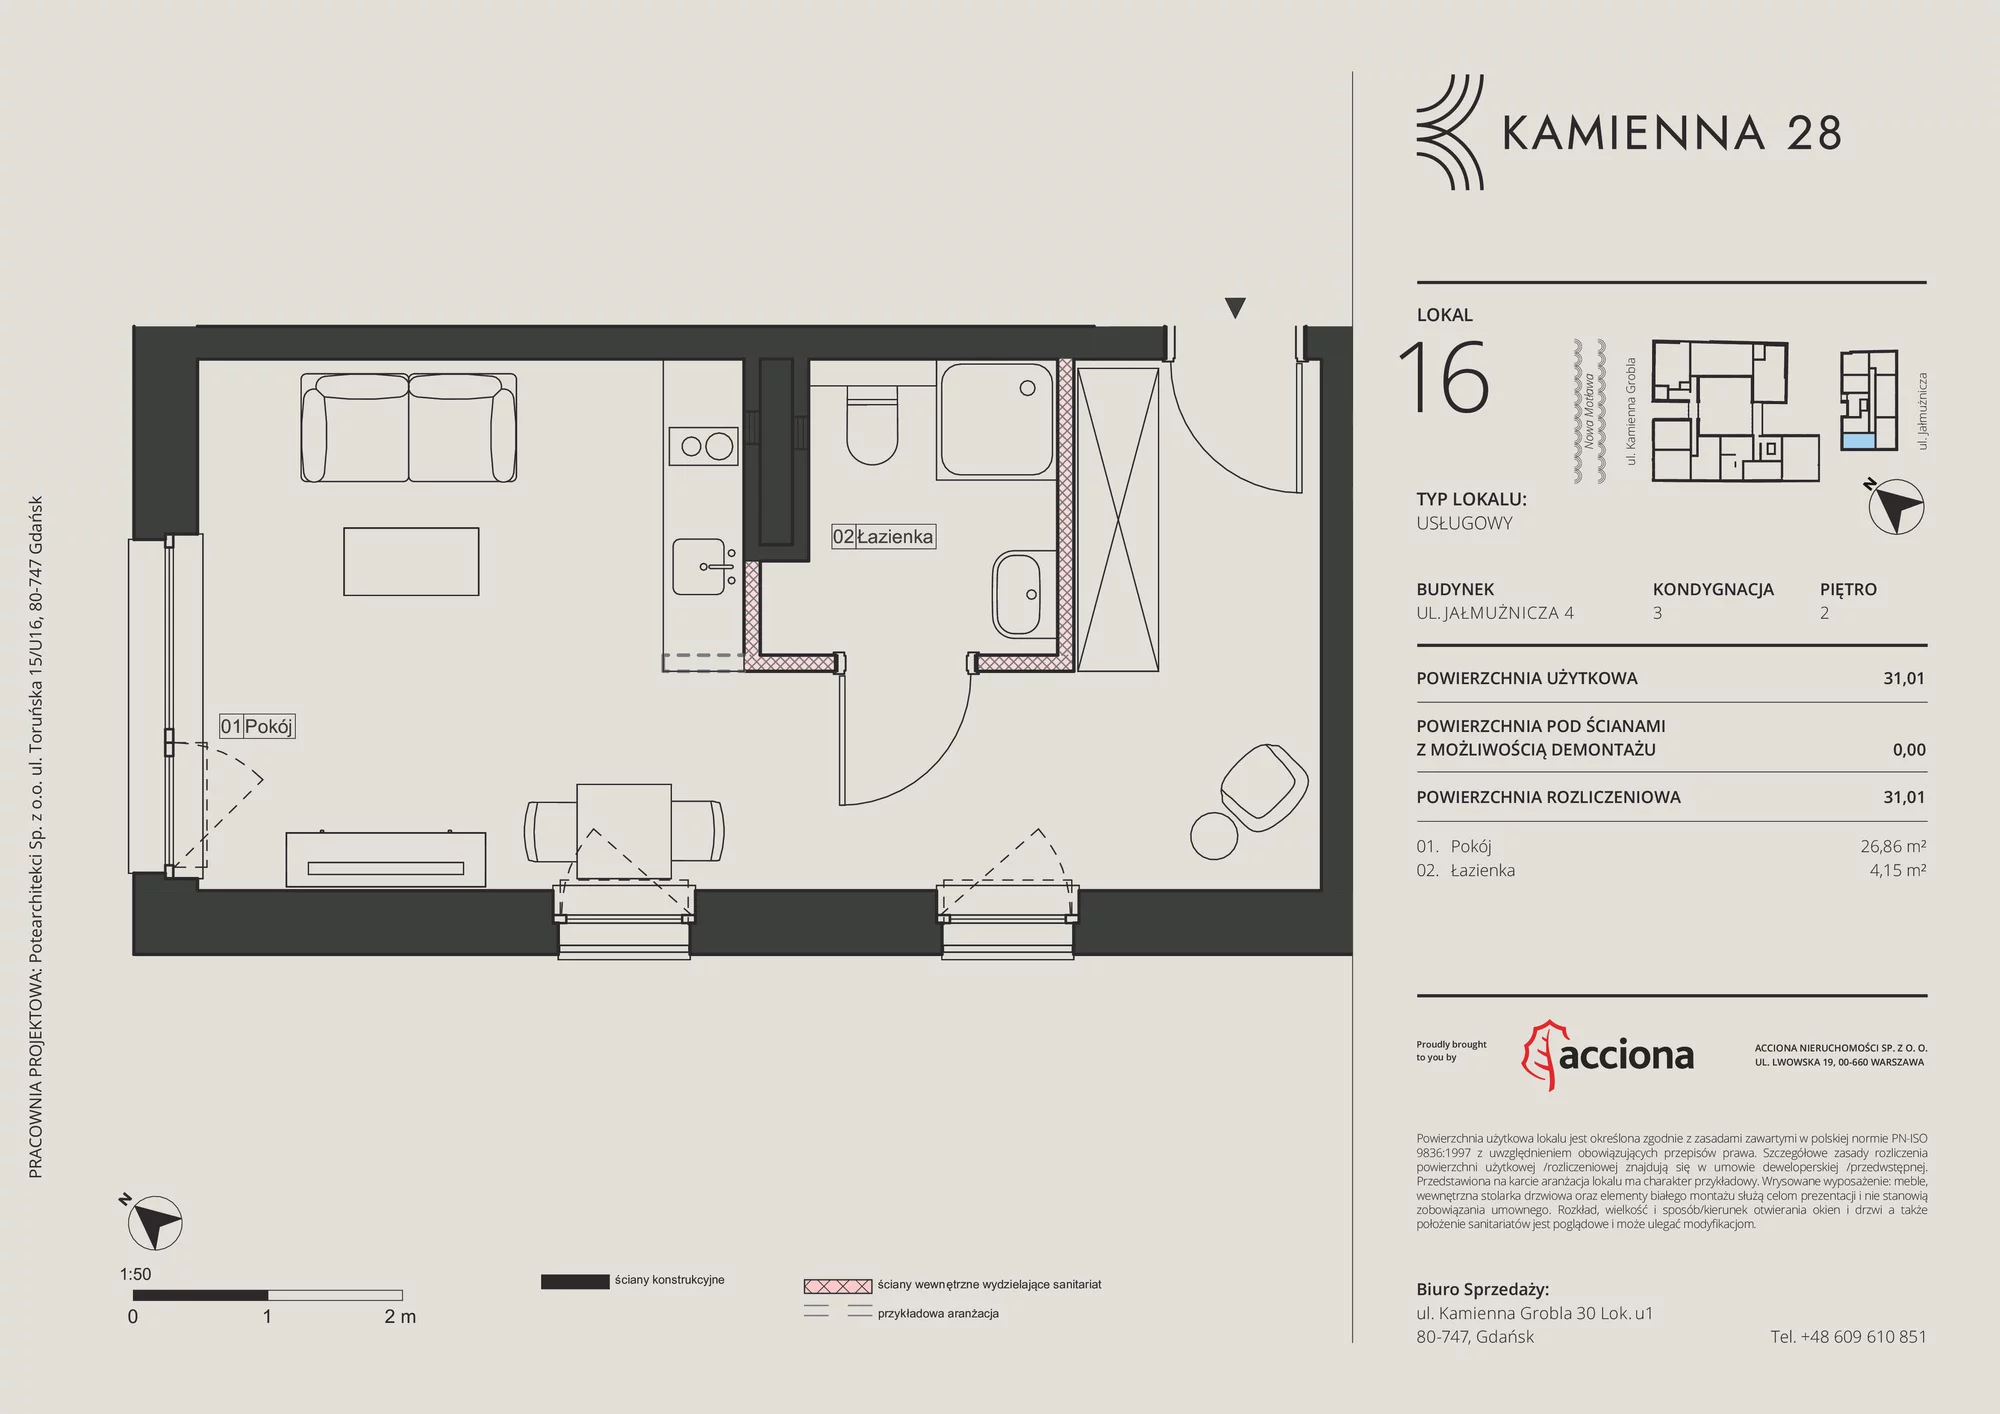 Apartament inwestycyjny 31,01 m², piętro 2, oferta nr 4.16, Kamienna 28 - apartamenty inwestycyjne, Gdańsk, Śródmieście, Dolne Miasto, ul. Jałmużnicza 4